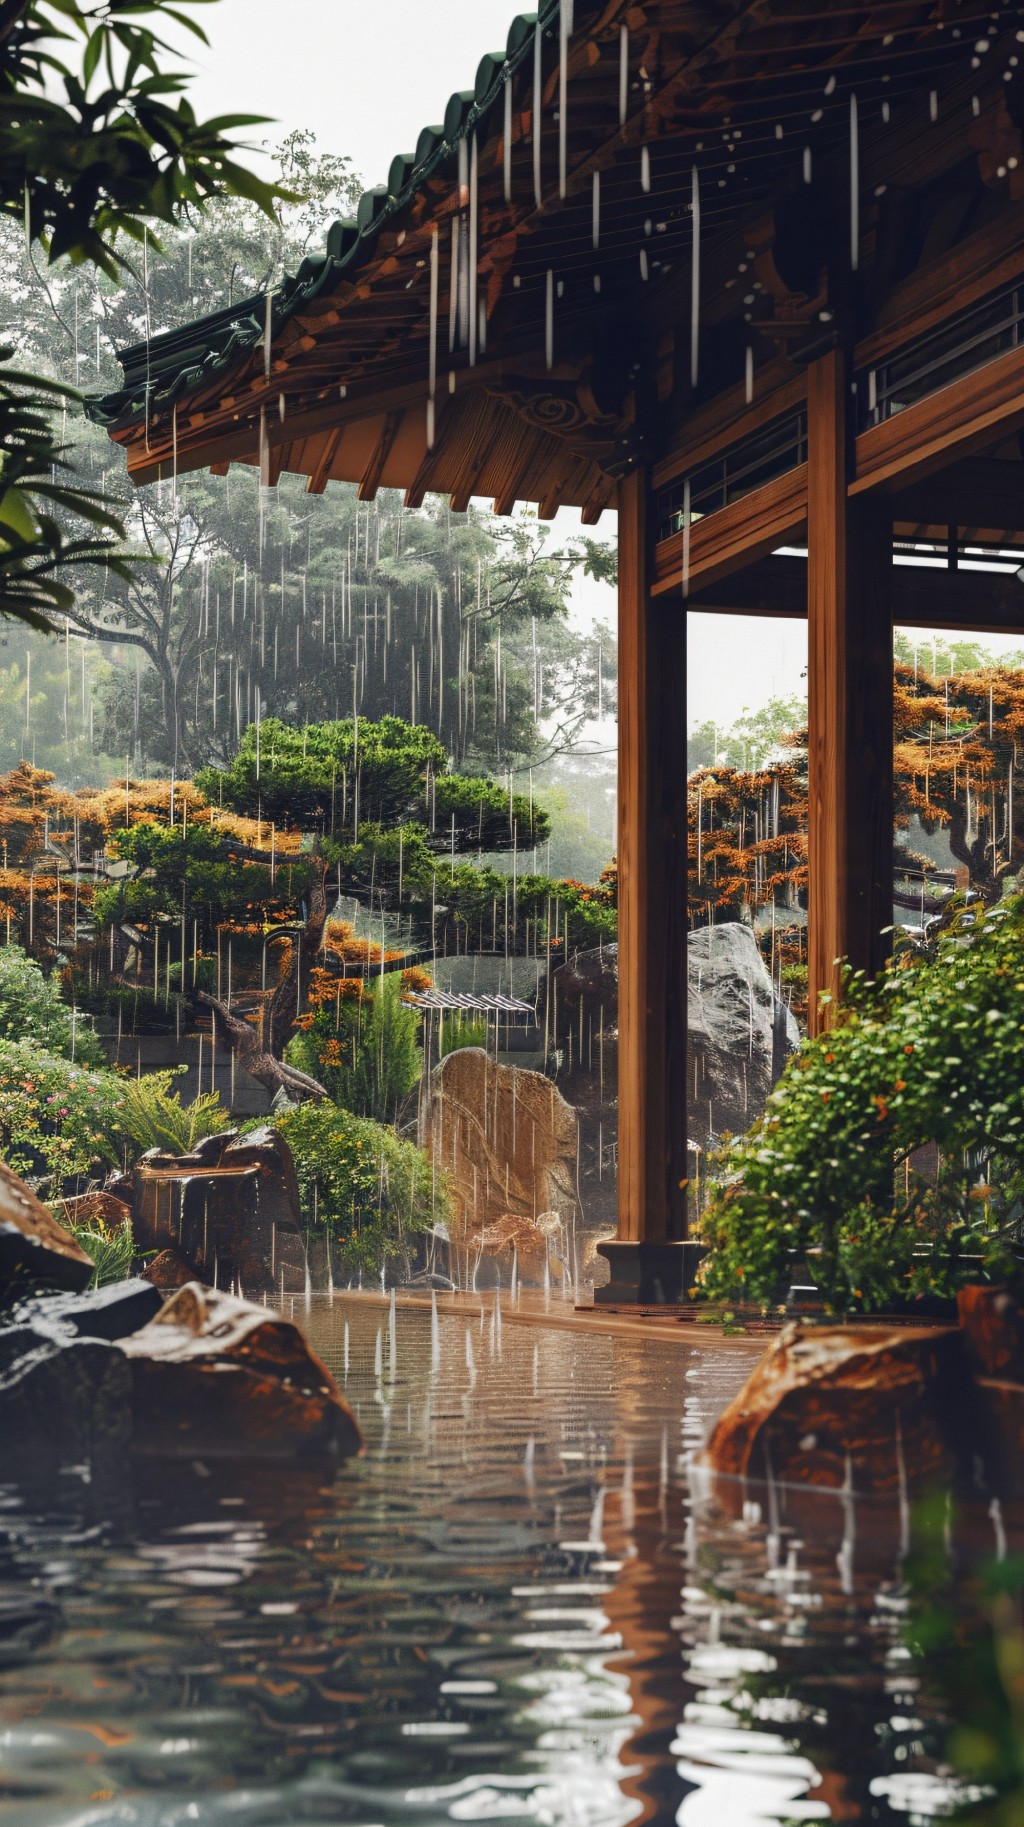 梅雨季风景手机壁纸